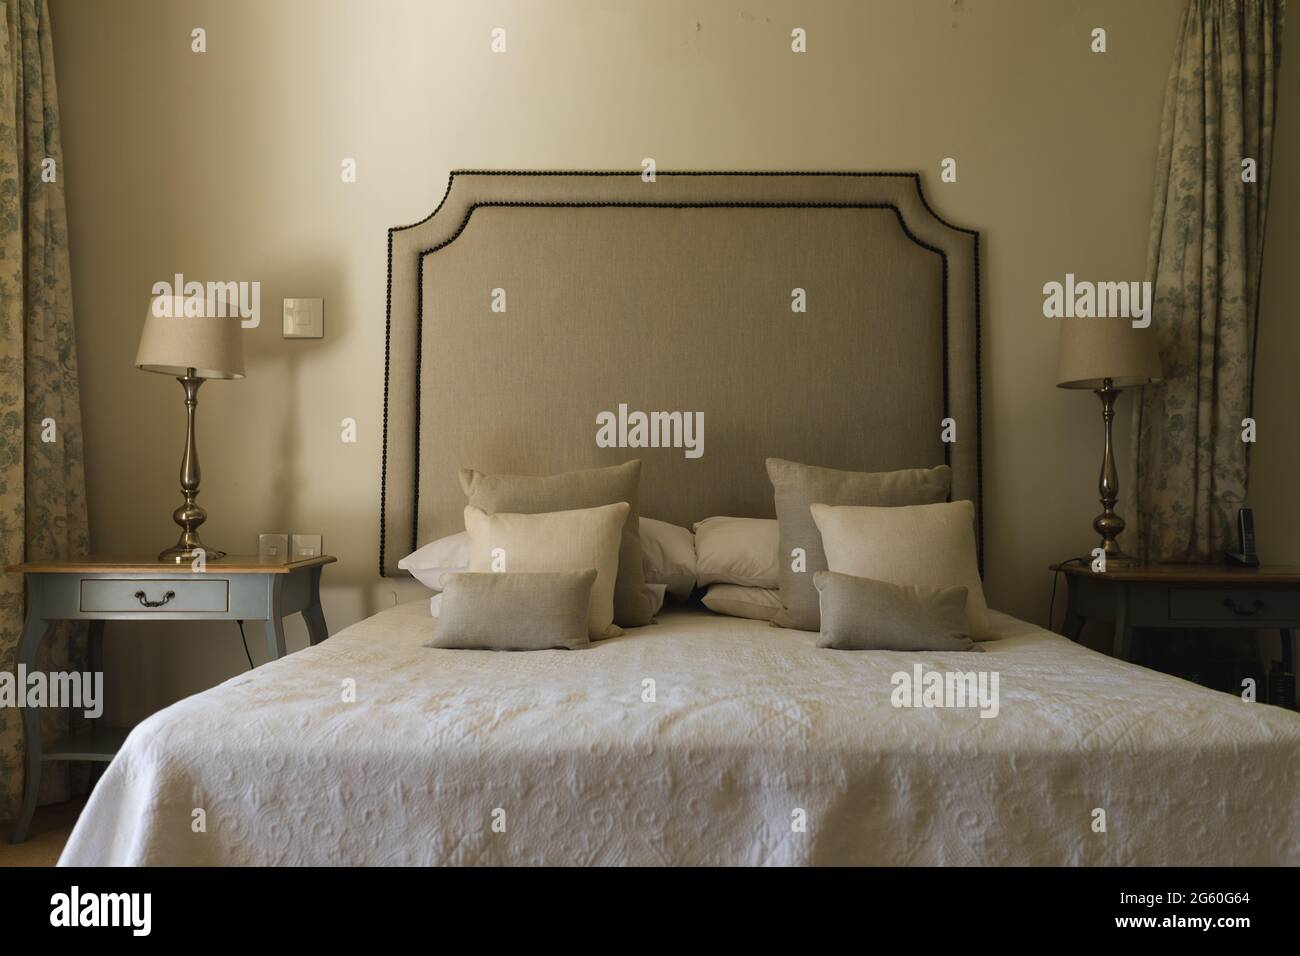 Vue générale de la chambre ensoleillée de luxe avec grand lit et tables de nuit Banque D'Images